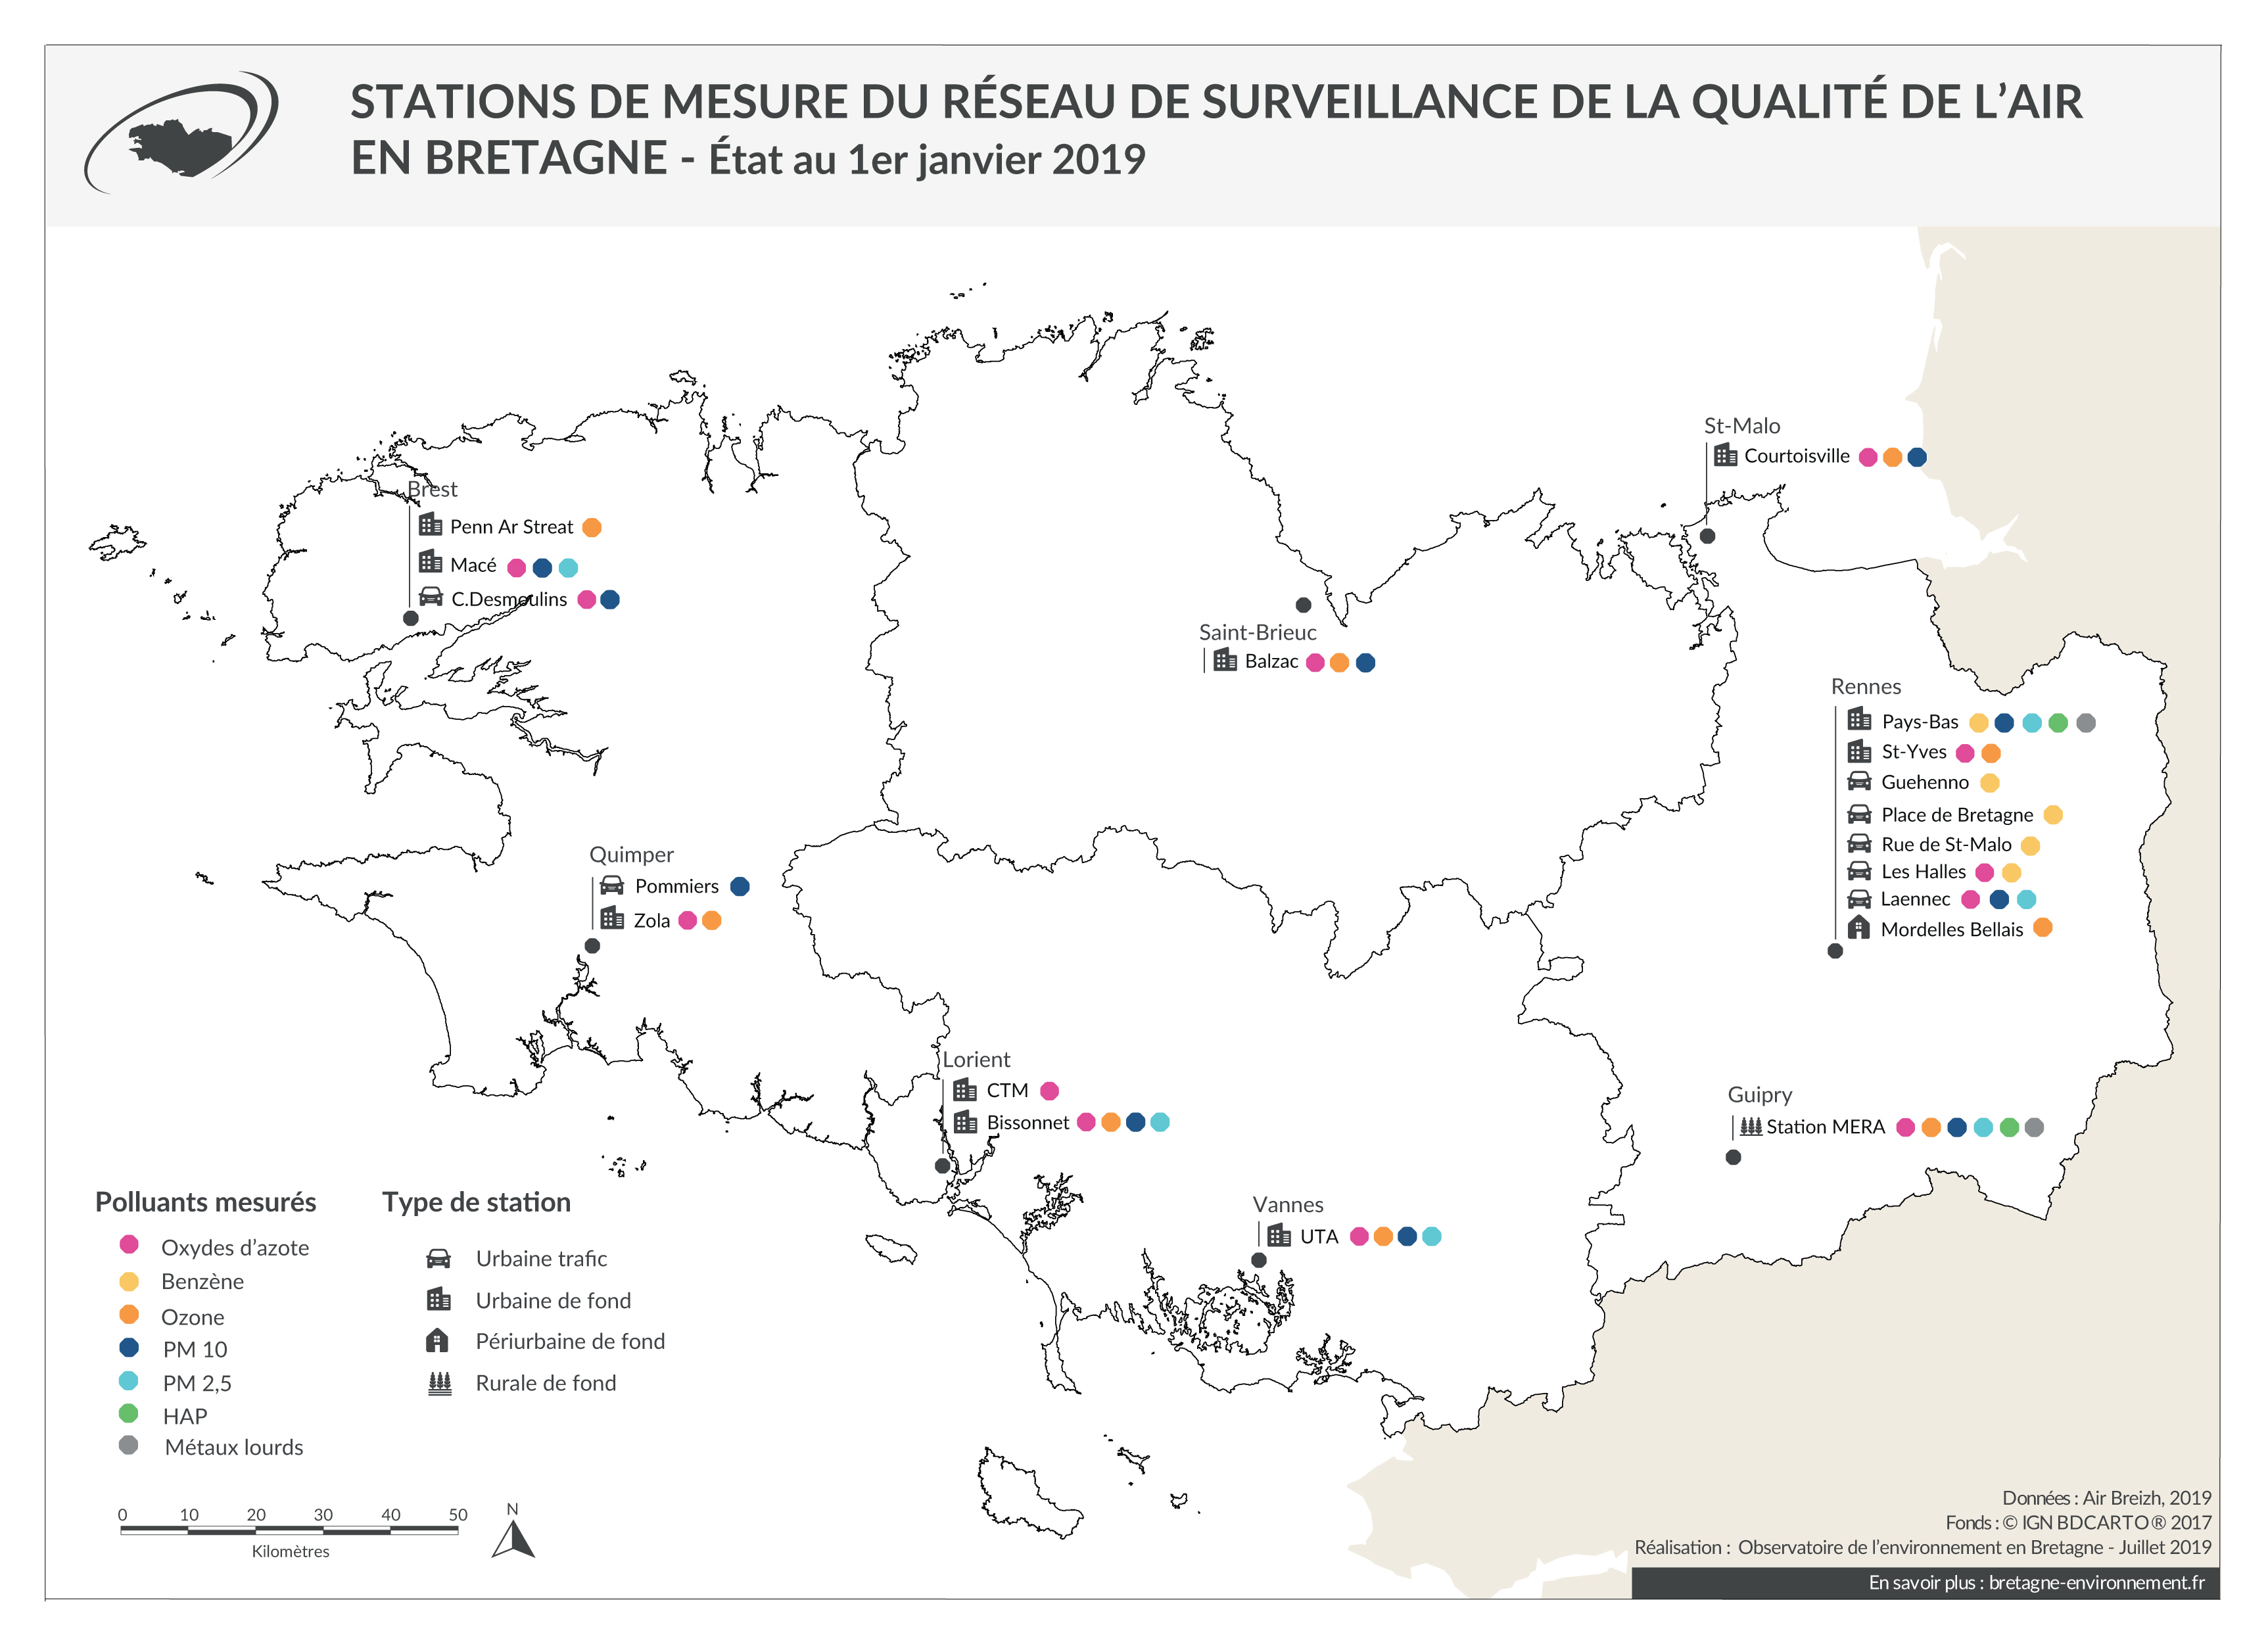 Stations de mesure du réseau de surveillance de l'air en Bretagne - Janvier 2019